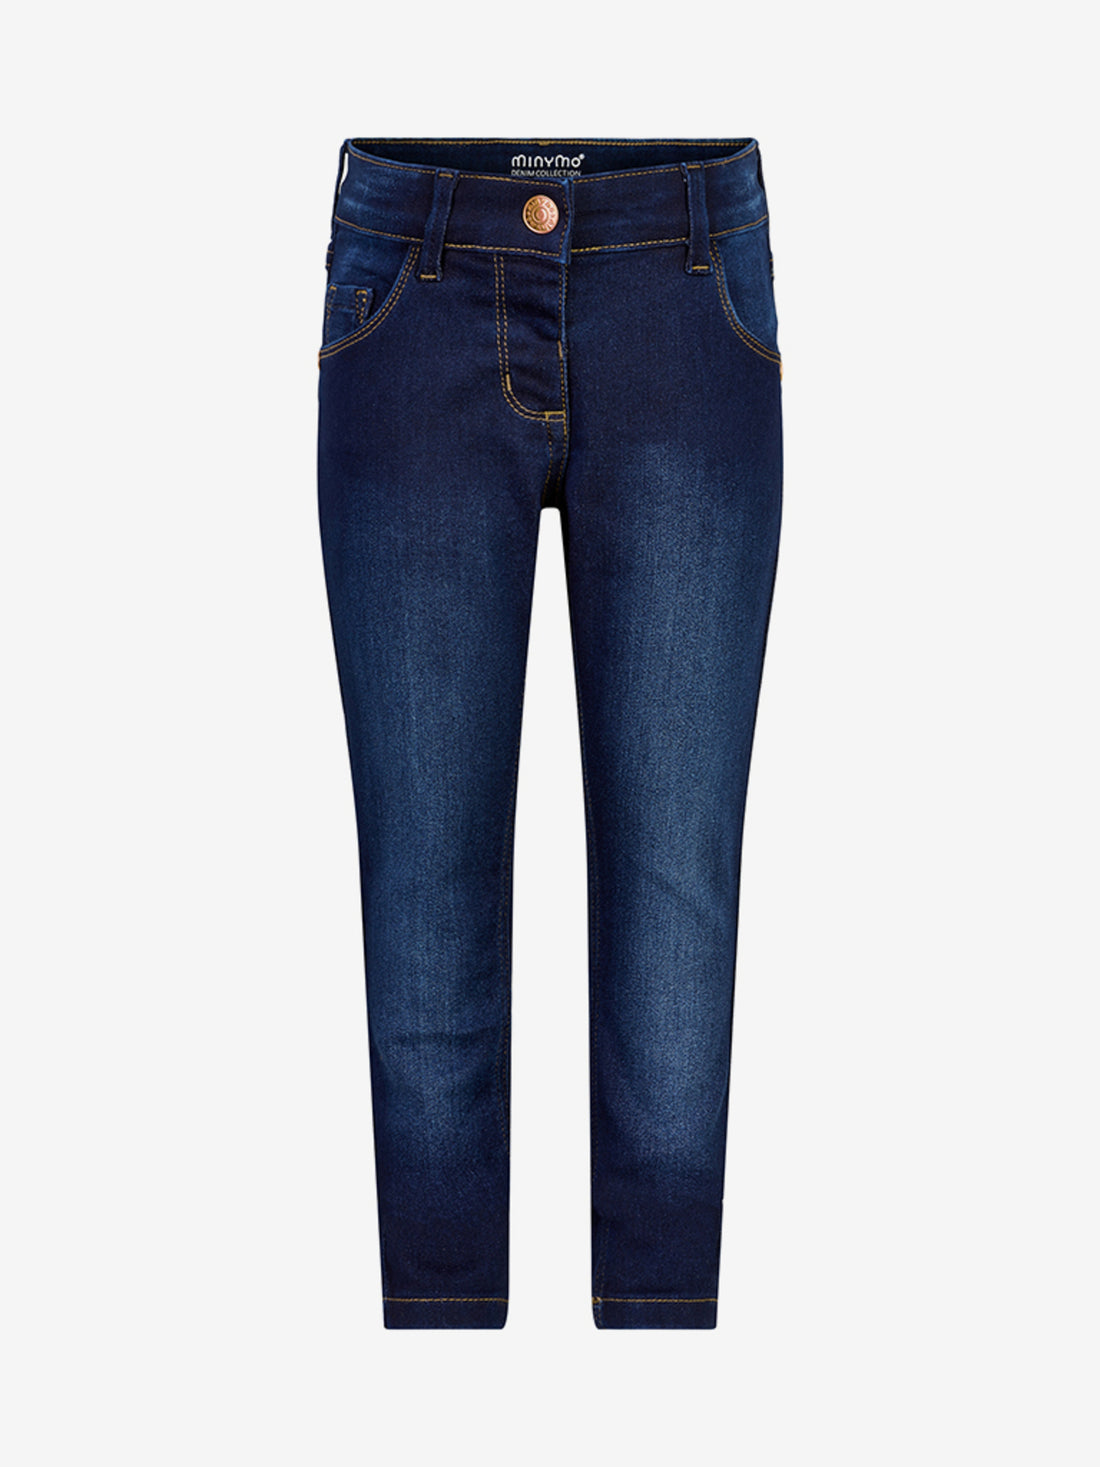 Klassische Jeans für Mädchen mit viel Stretch in dunkelblau von Minymo.